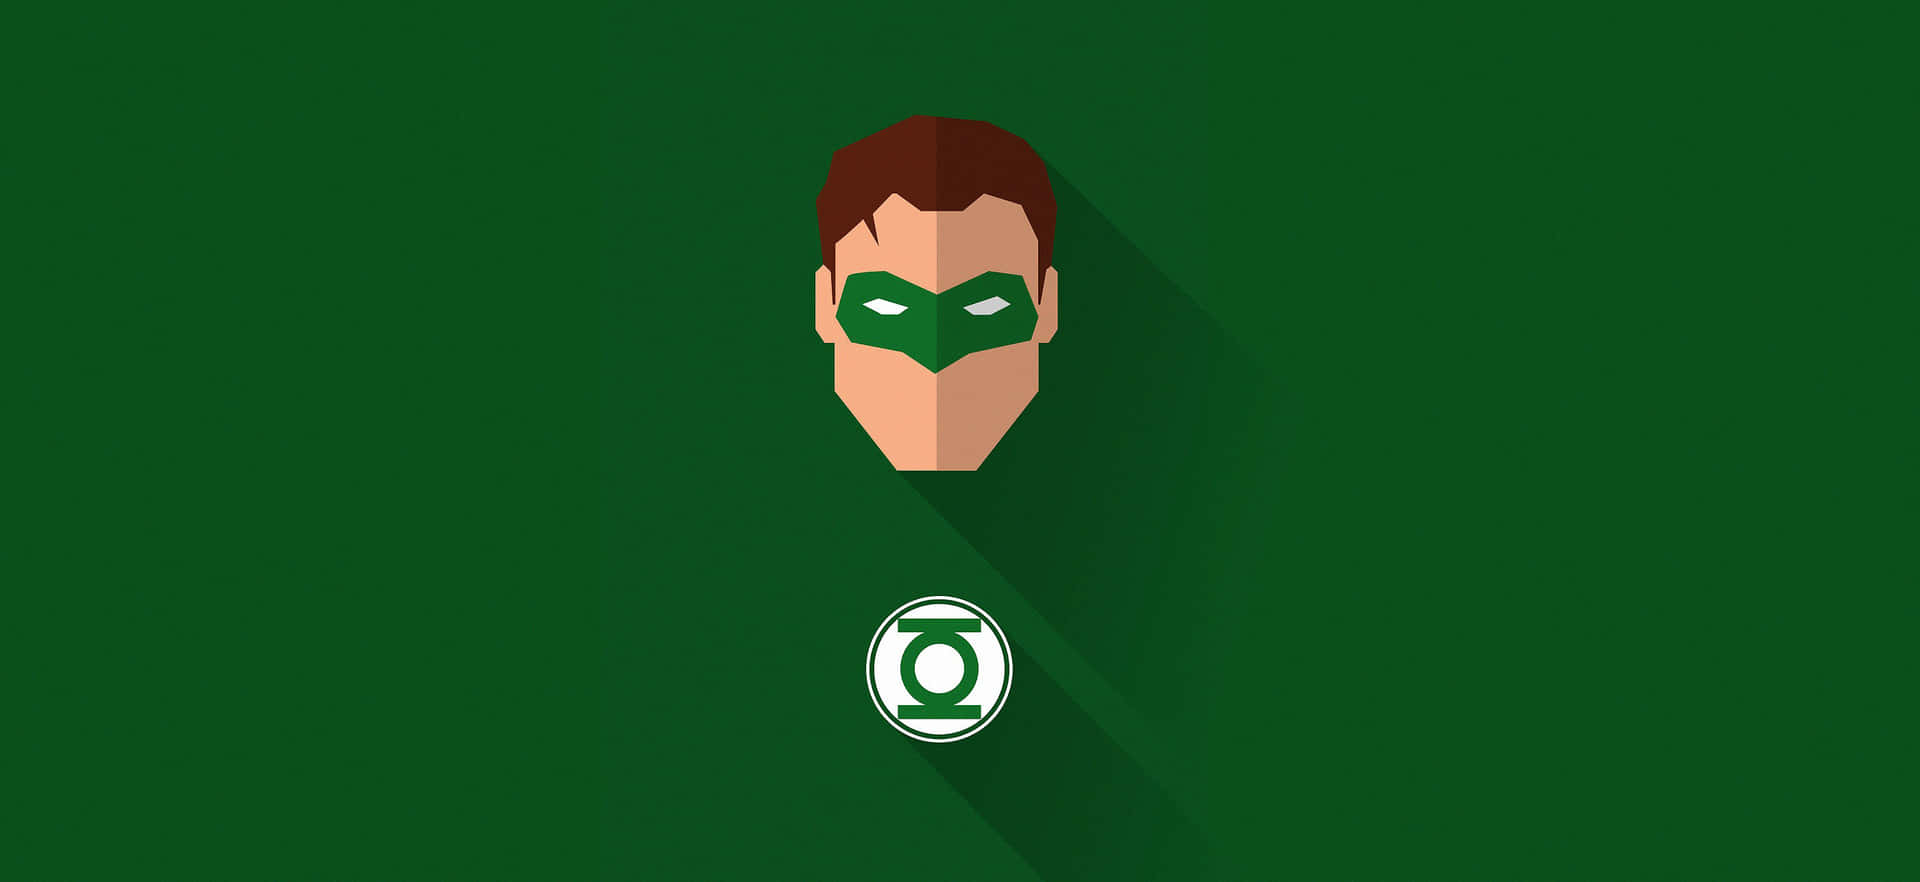 Gåmed I Green Lantern Corps Och Skydda Galaxen!